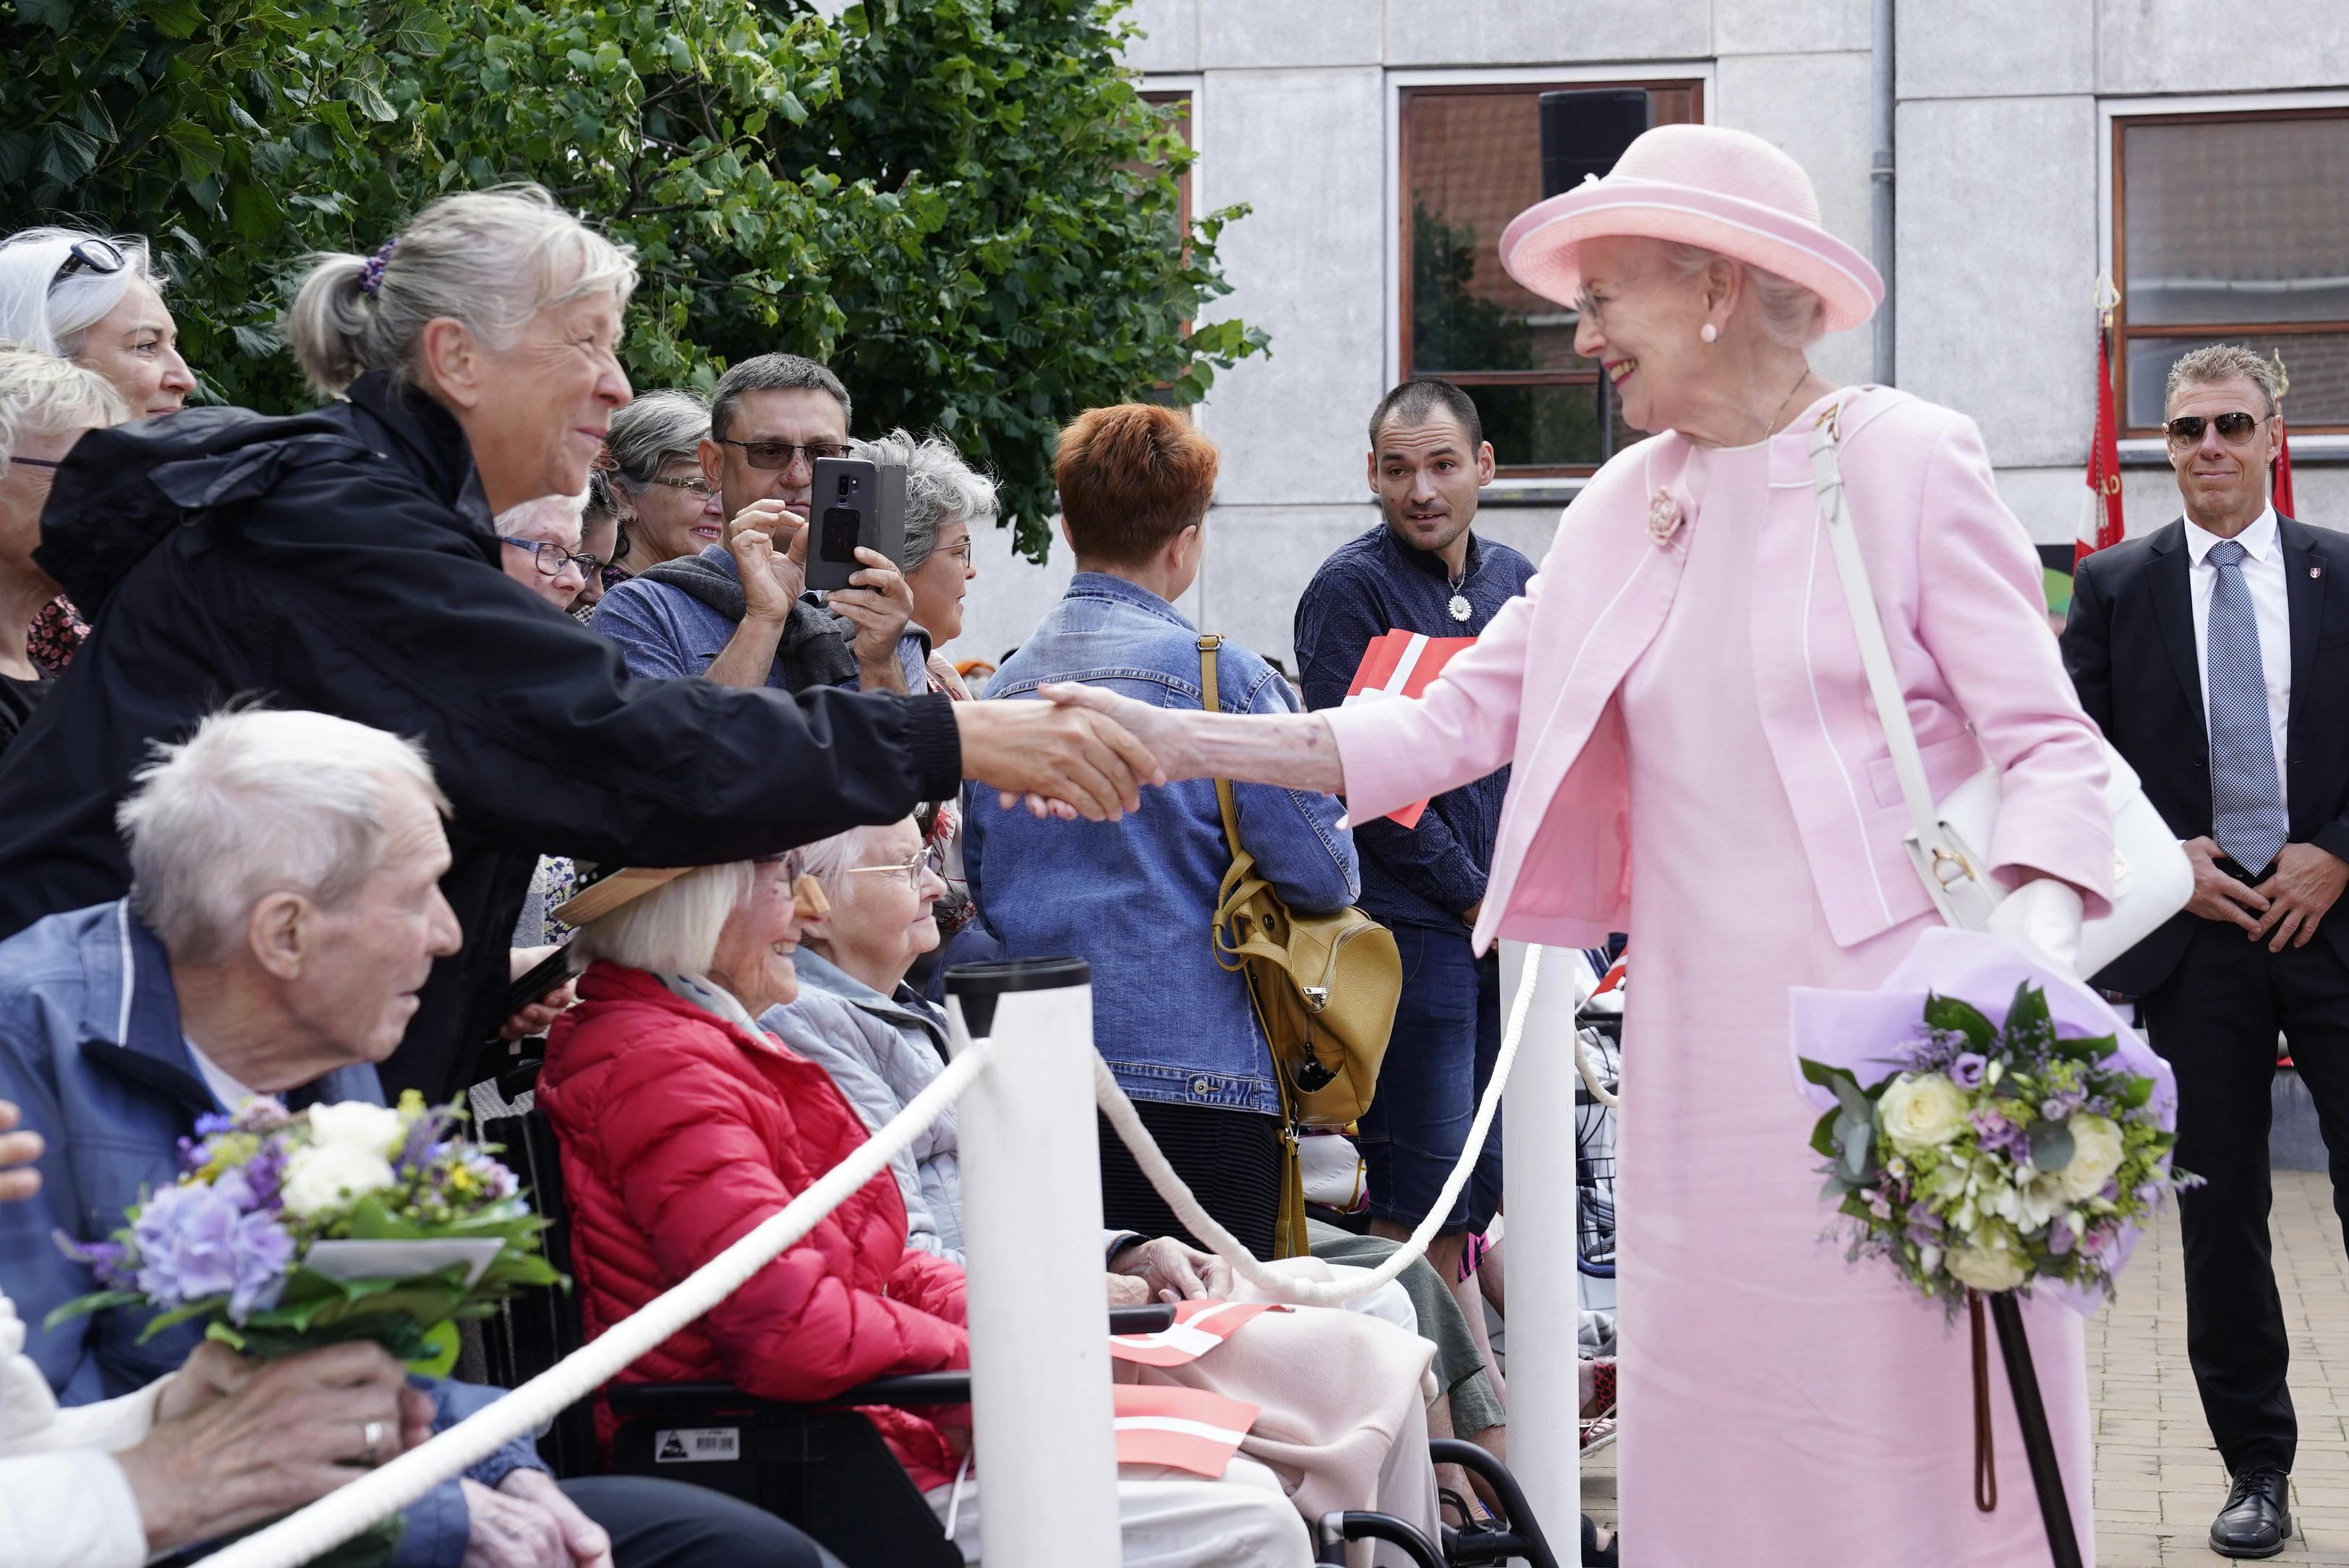 Dronning Margrethe gæster i dag, tirsdag den 18. juli, Gråsten.
